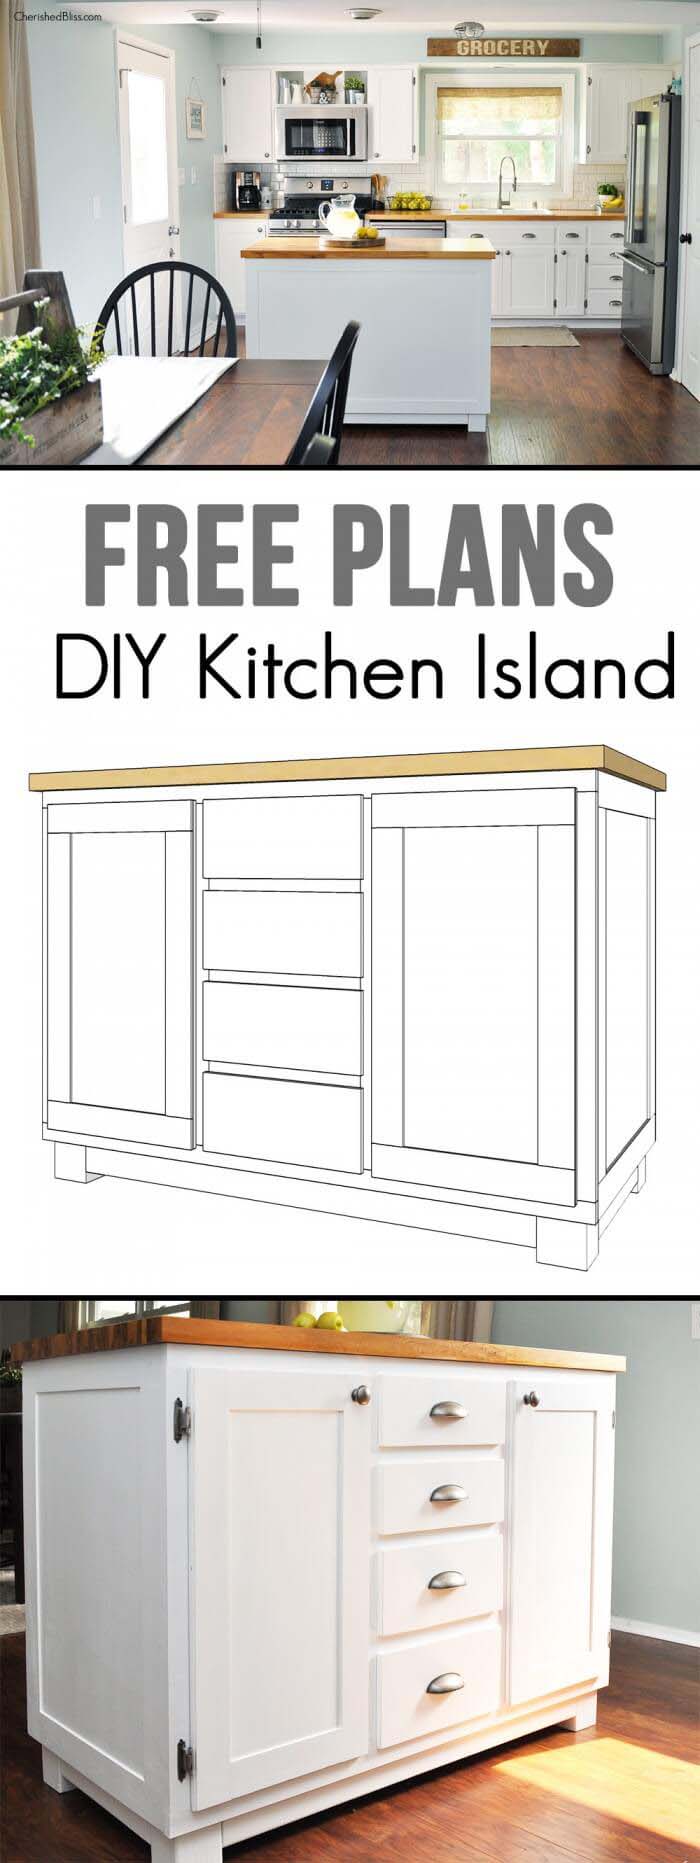 Find Free Kitchen Island Tutorials Online #diy #ktichenisland #decorhomeideas